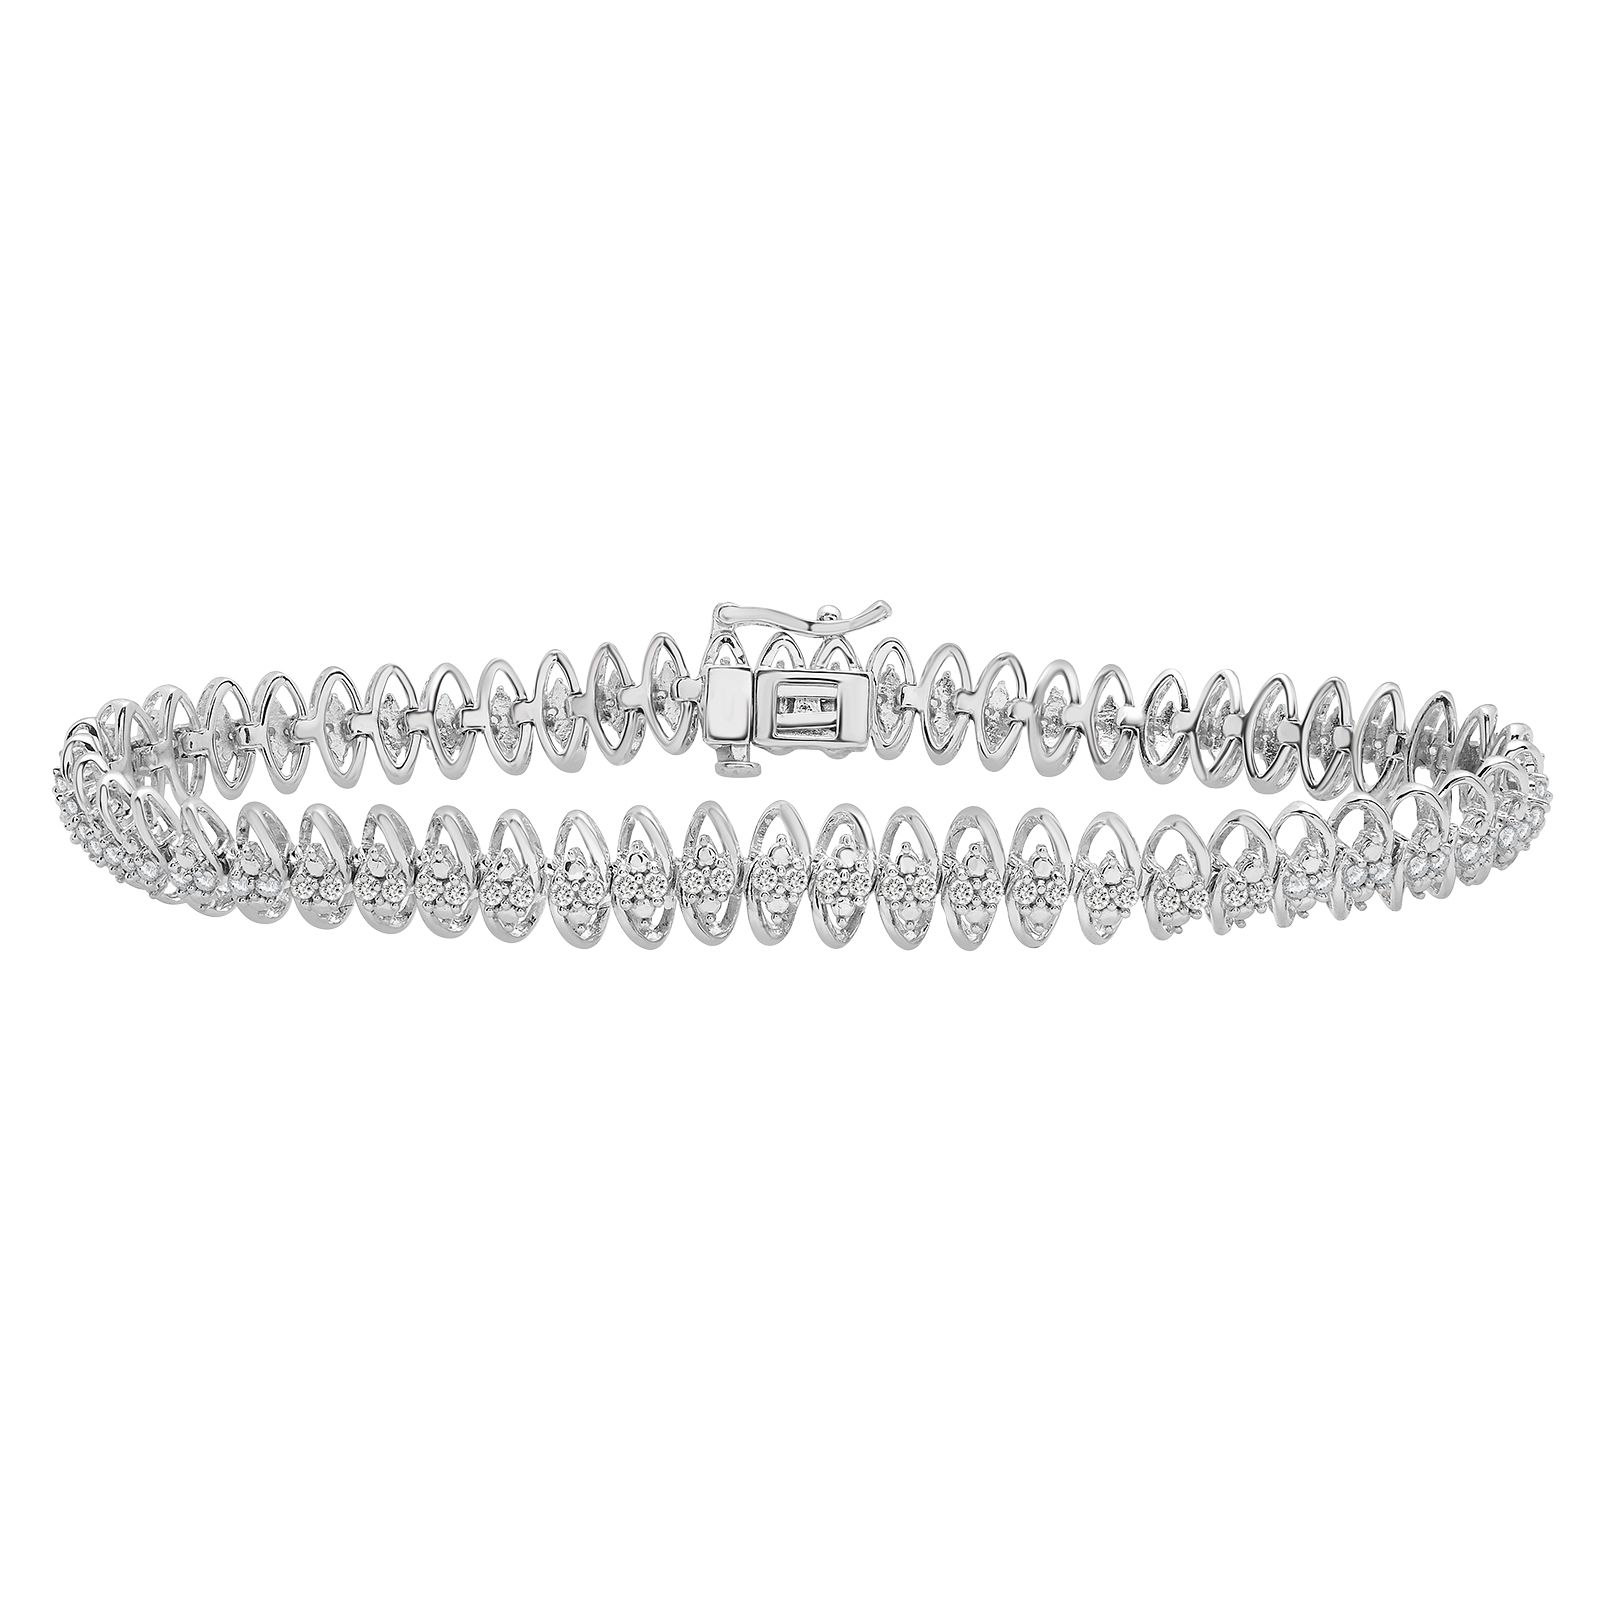 Authentic LOUIS VUITTON Diamond Bracelet #260-006-303-5988